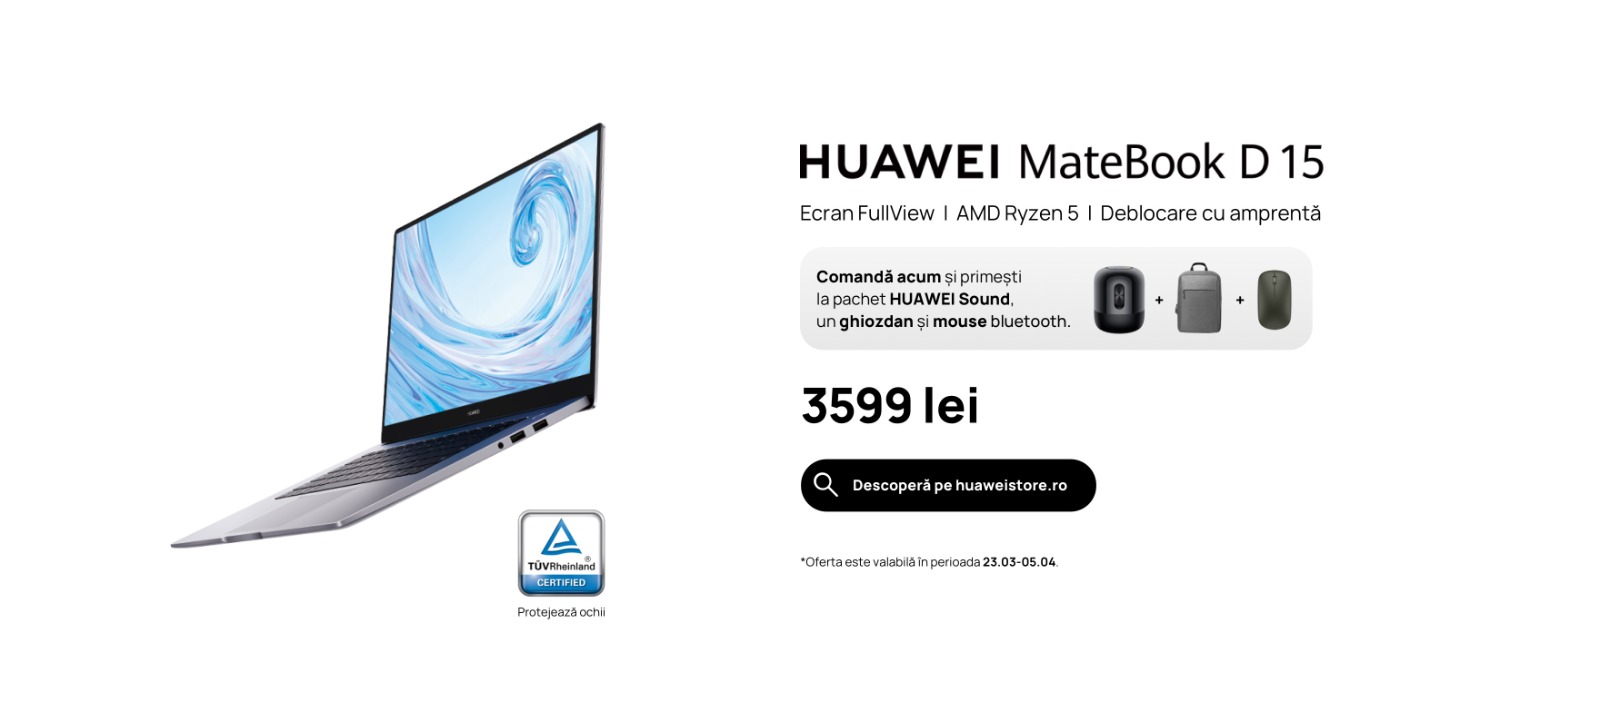 Huawei lansează HUAWEI MateBook D 15 Ultralight cu ecran FullView